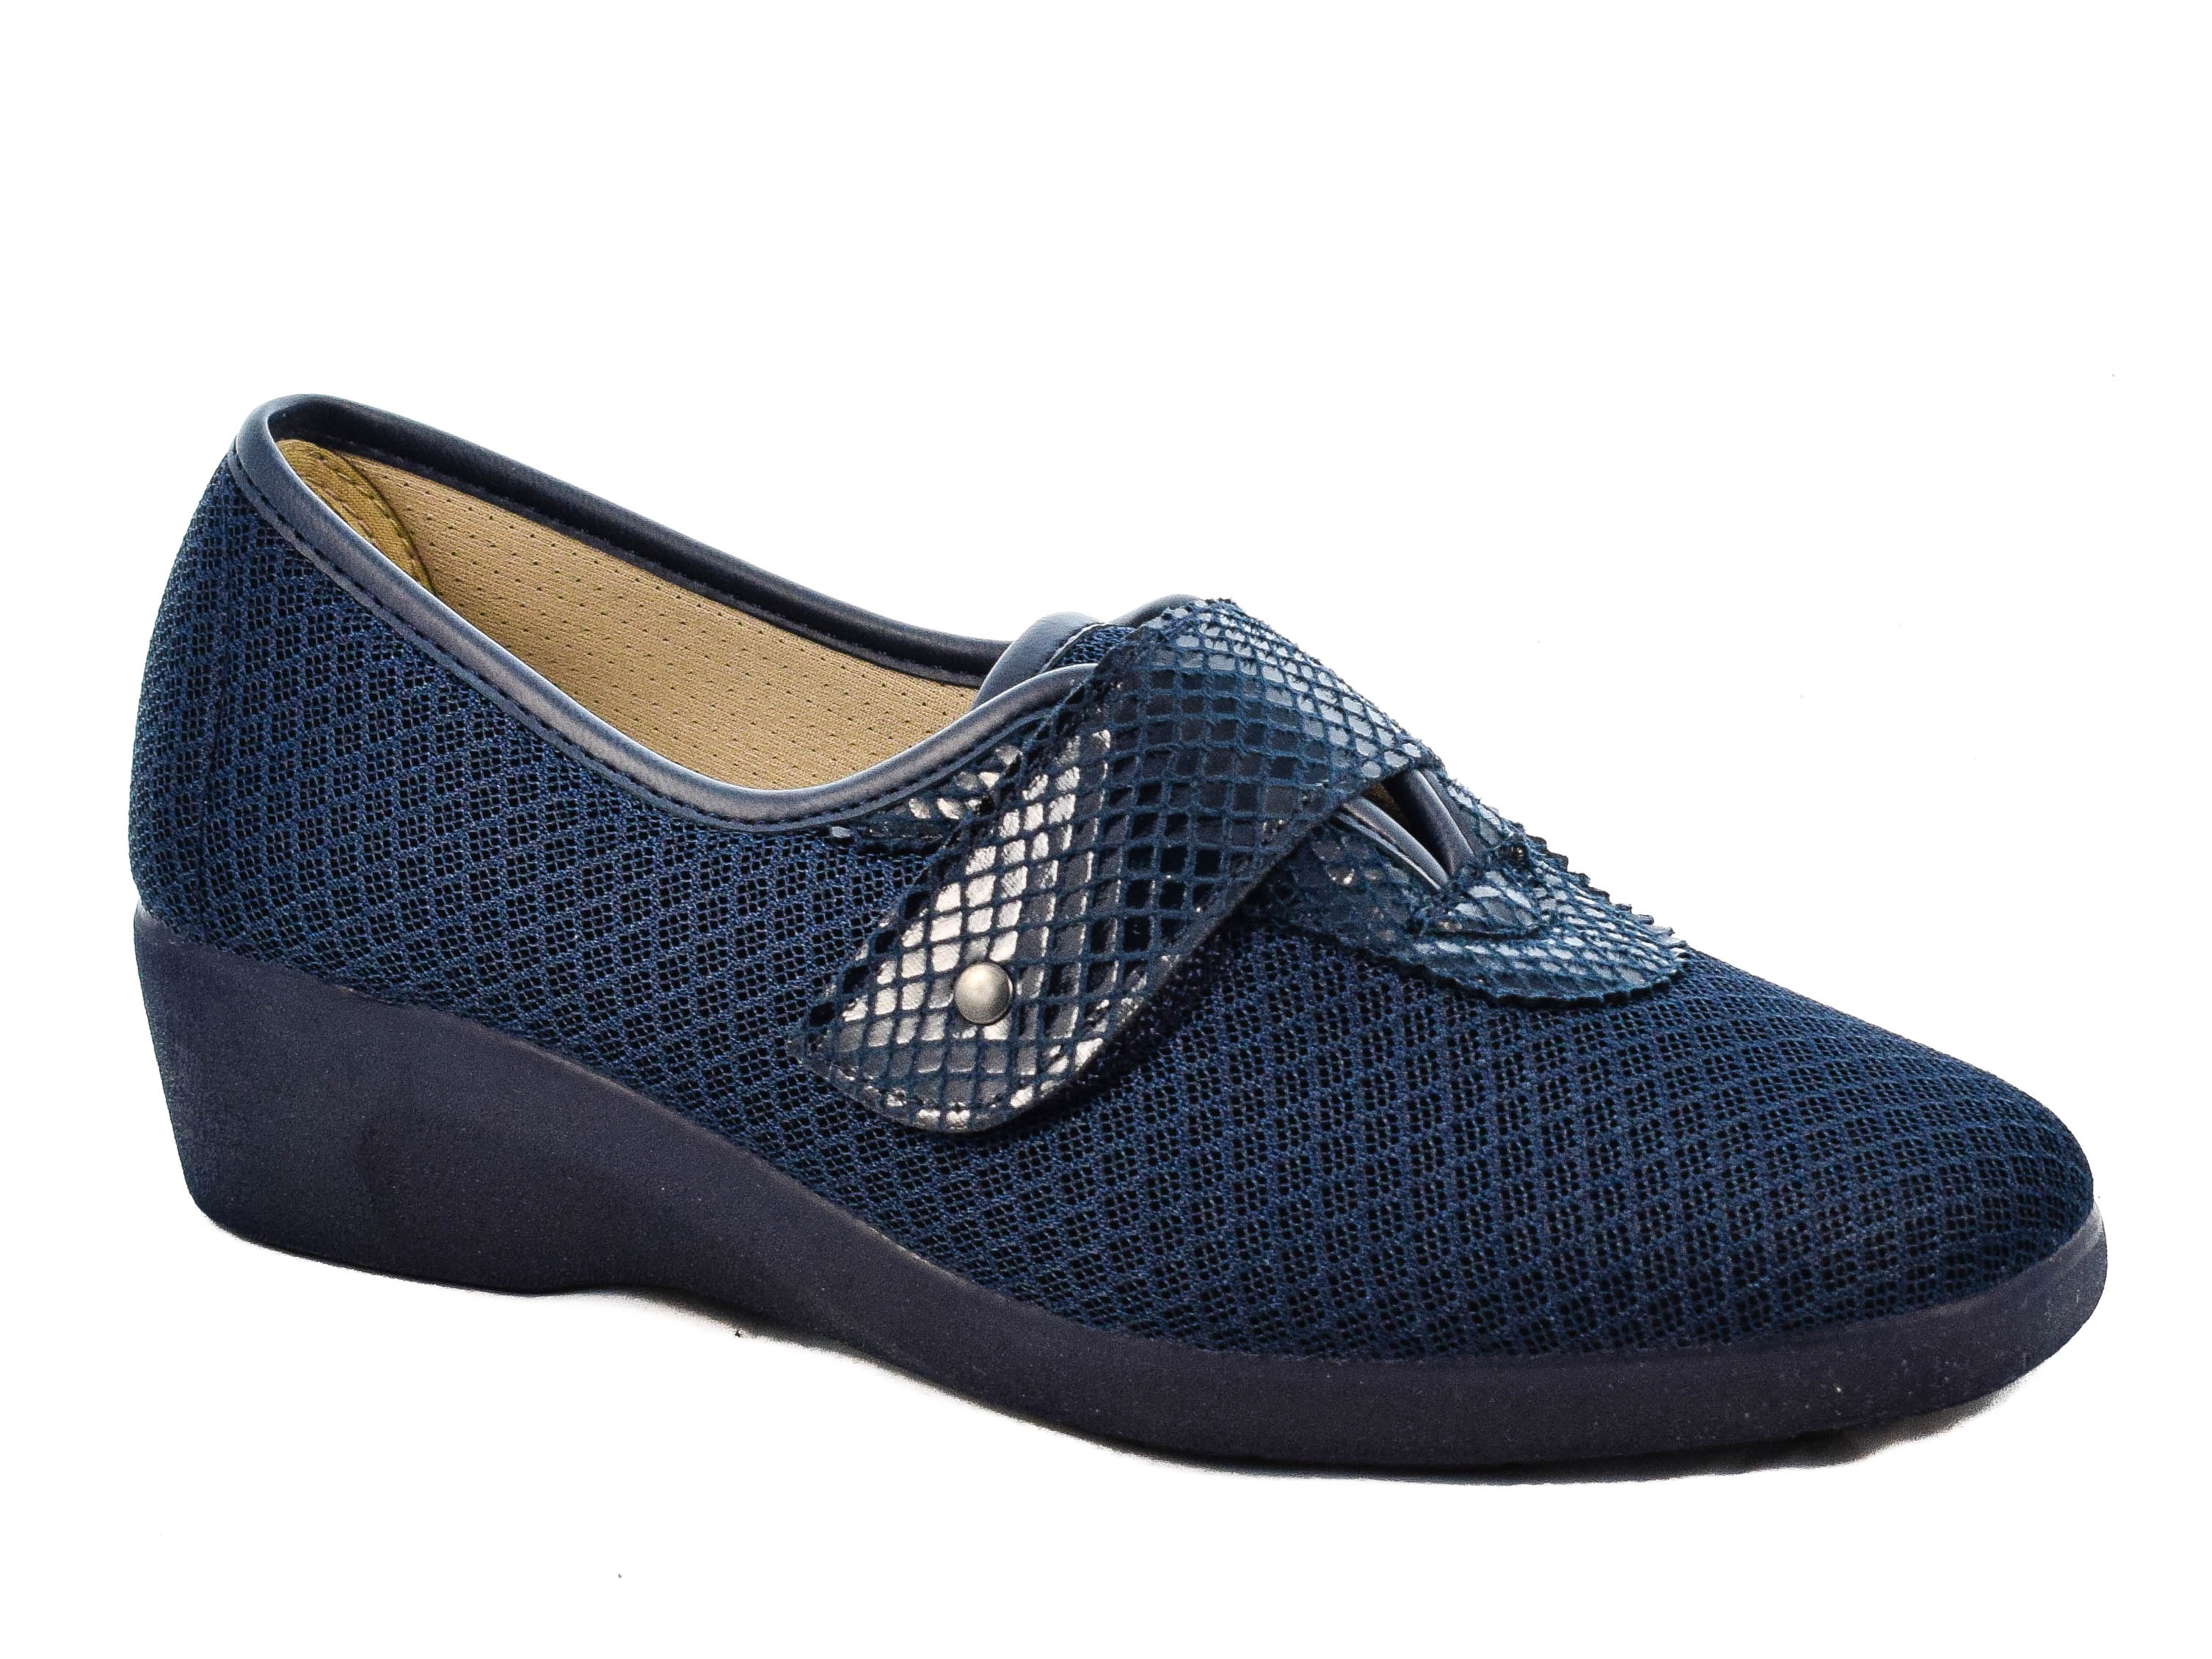 Γυναικεία Υφασμάτινα Παπούτσια DeValverde DV754 Μπλε Μπλε σκούρο